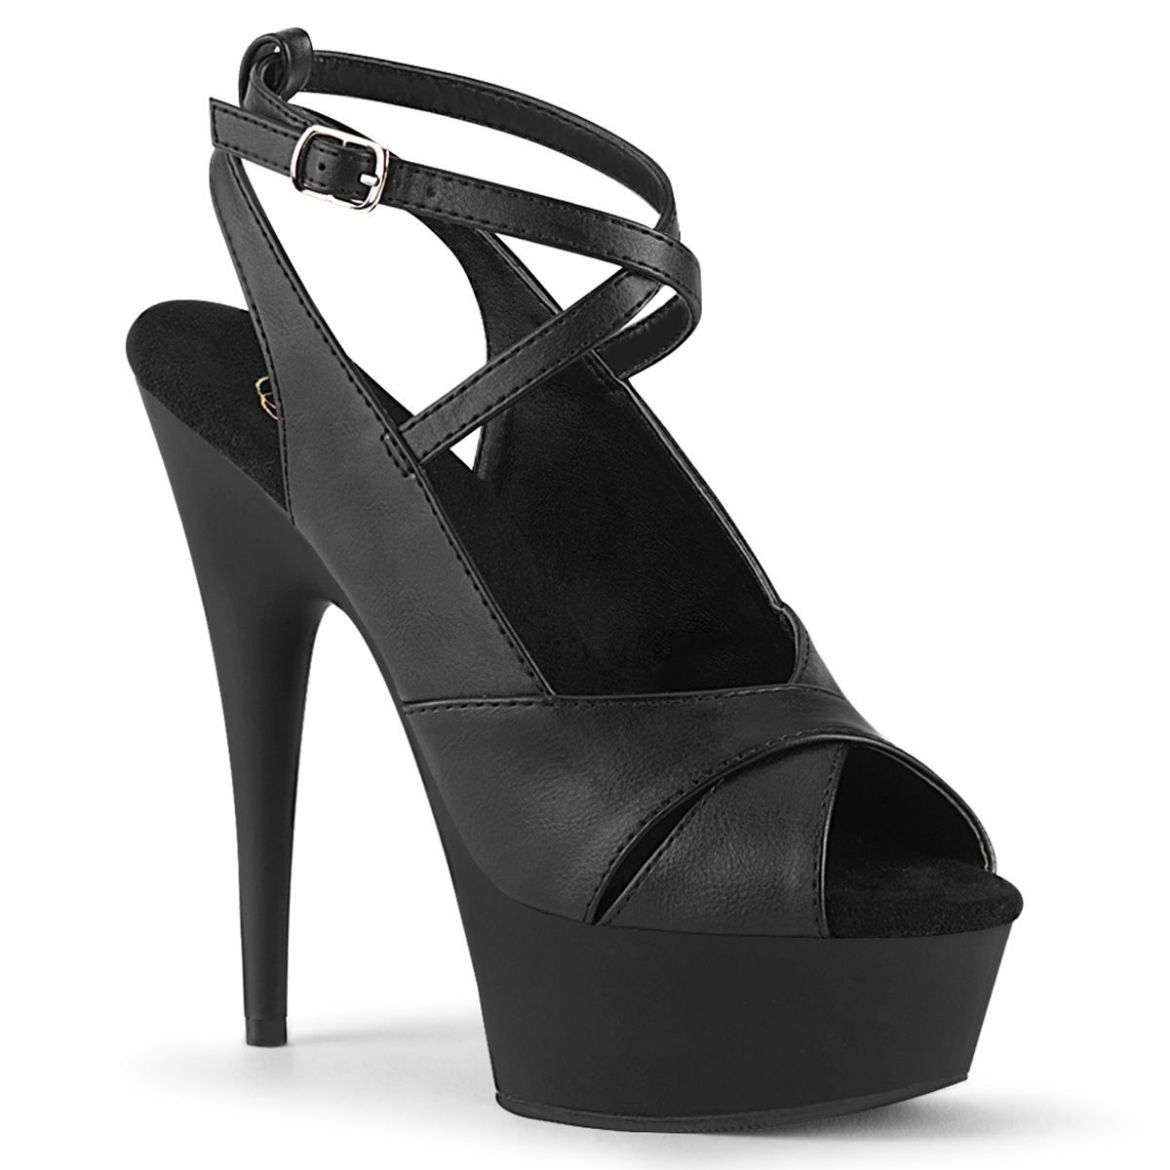 Product image of Pleaser DELIGHT-632 Black Faux Leather/Black Matte 6 inch (15.2 cm) Heel 1 3/4 inch (4.5 cm) Platform Sling Back Ankle Strap Sandal Shoes